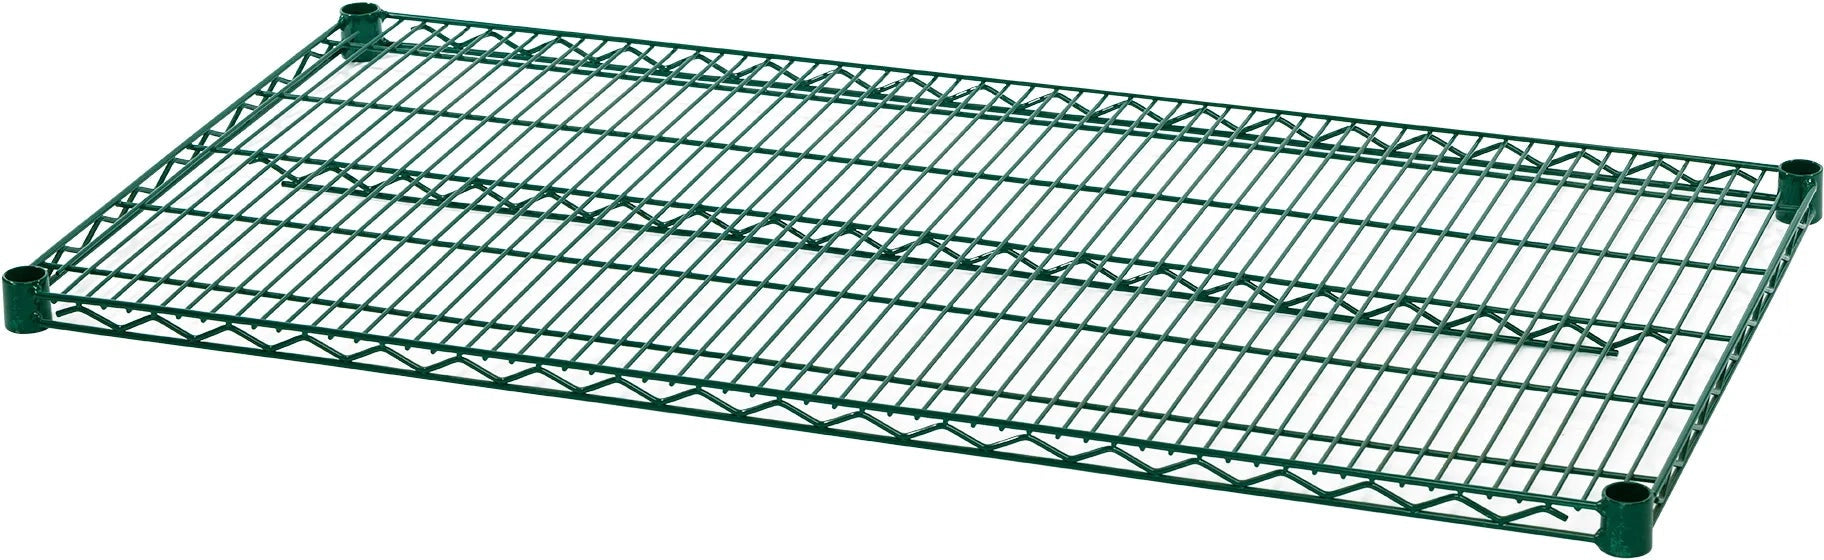 Julien - Rosko 60" x 24" Shelf For Wire Shelving, Green Epoxy - RO-WS-S6024-GE